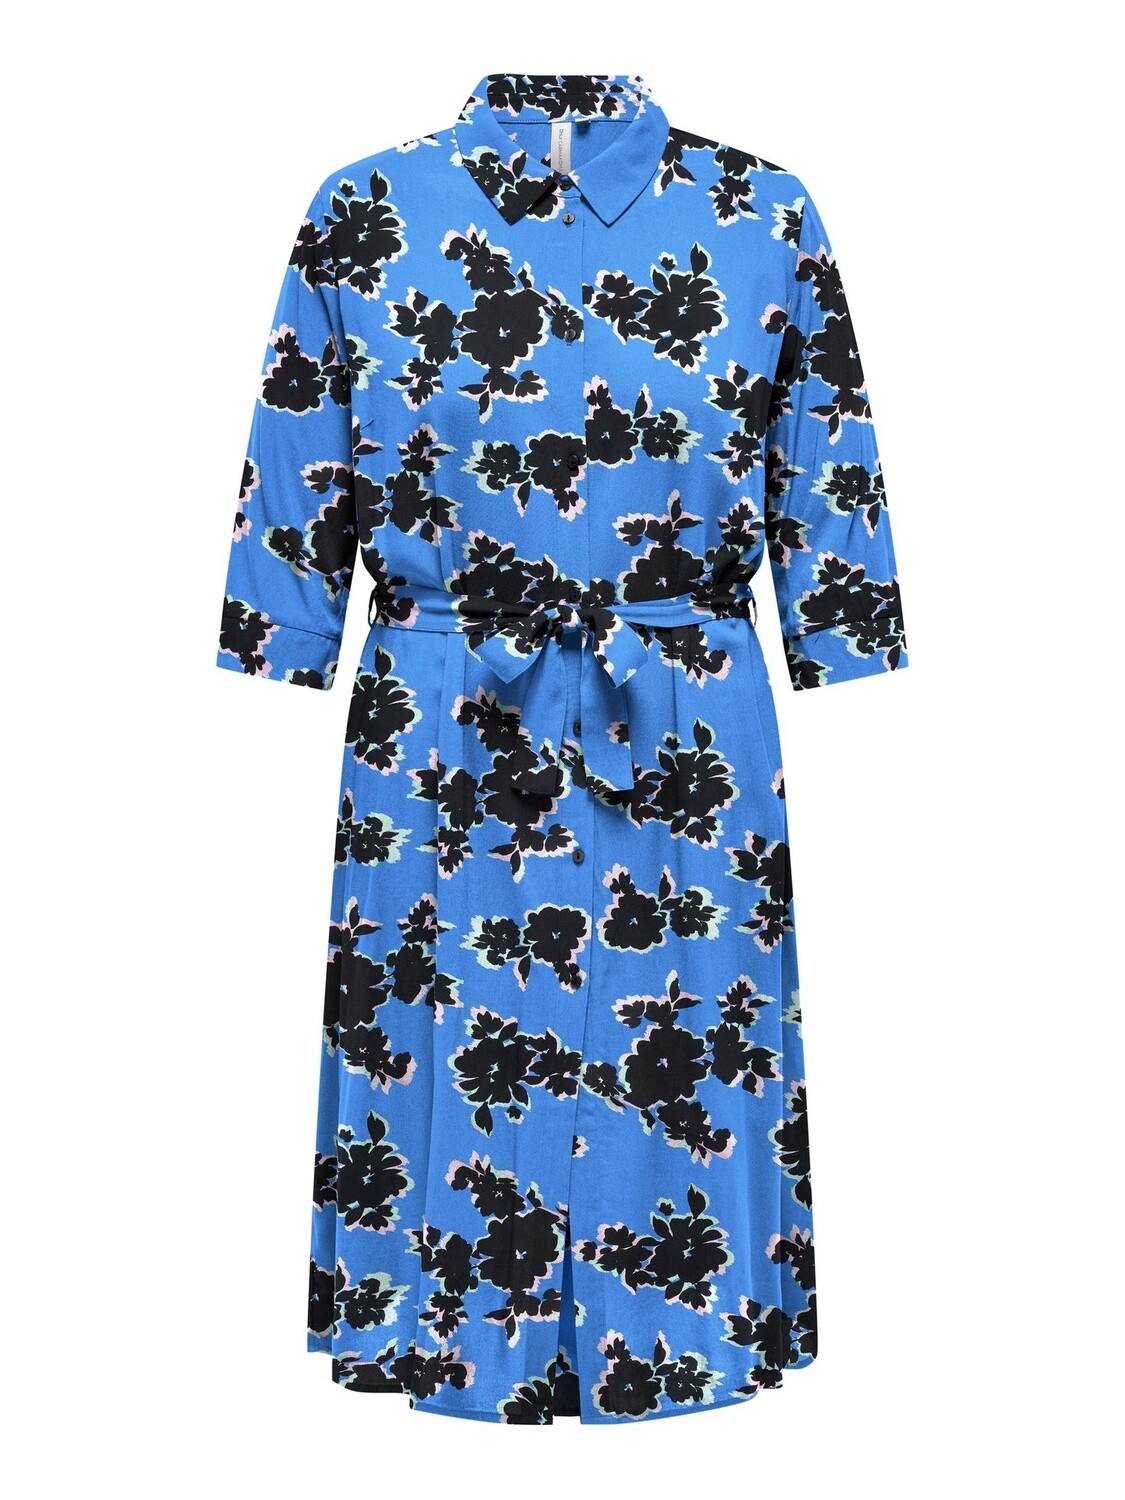 CARNOVA LIFE 3/4 CALF SHIRT DRESS, maat: 48, kleur: Dazzling Blue OPEN FLOWER